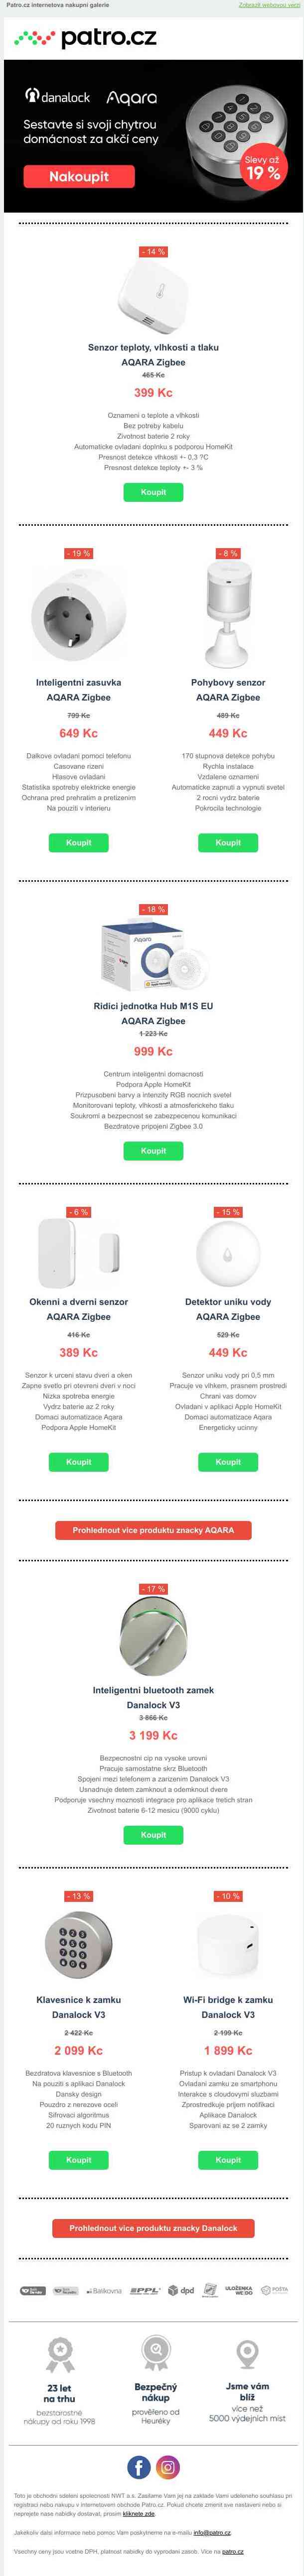 Nejprodávanější produkty chytré domácnosti za akční ceny >> Slevy až 19 % na produkty značky AQARA a Danalock